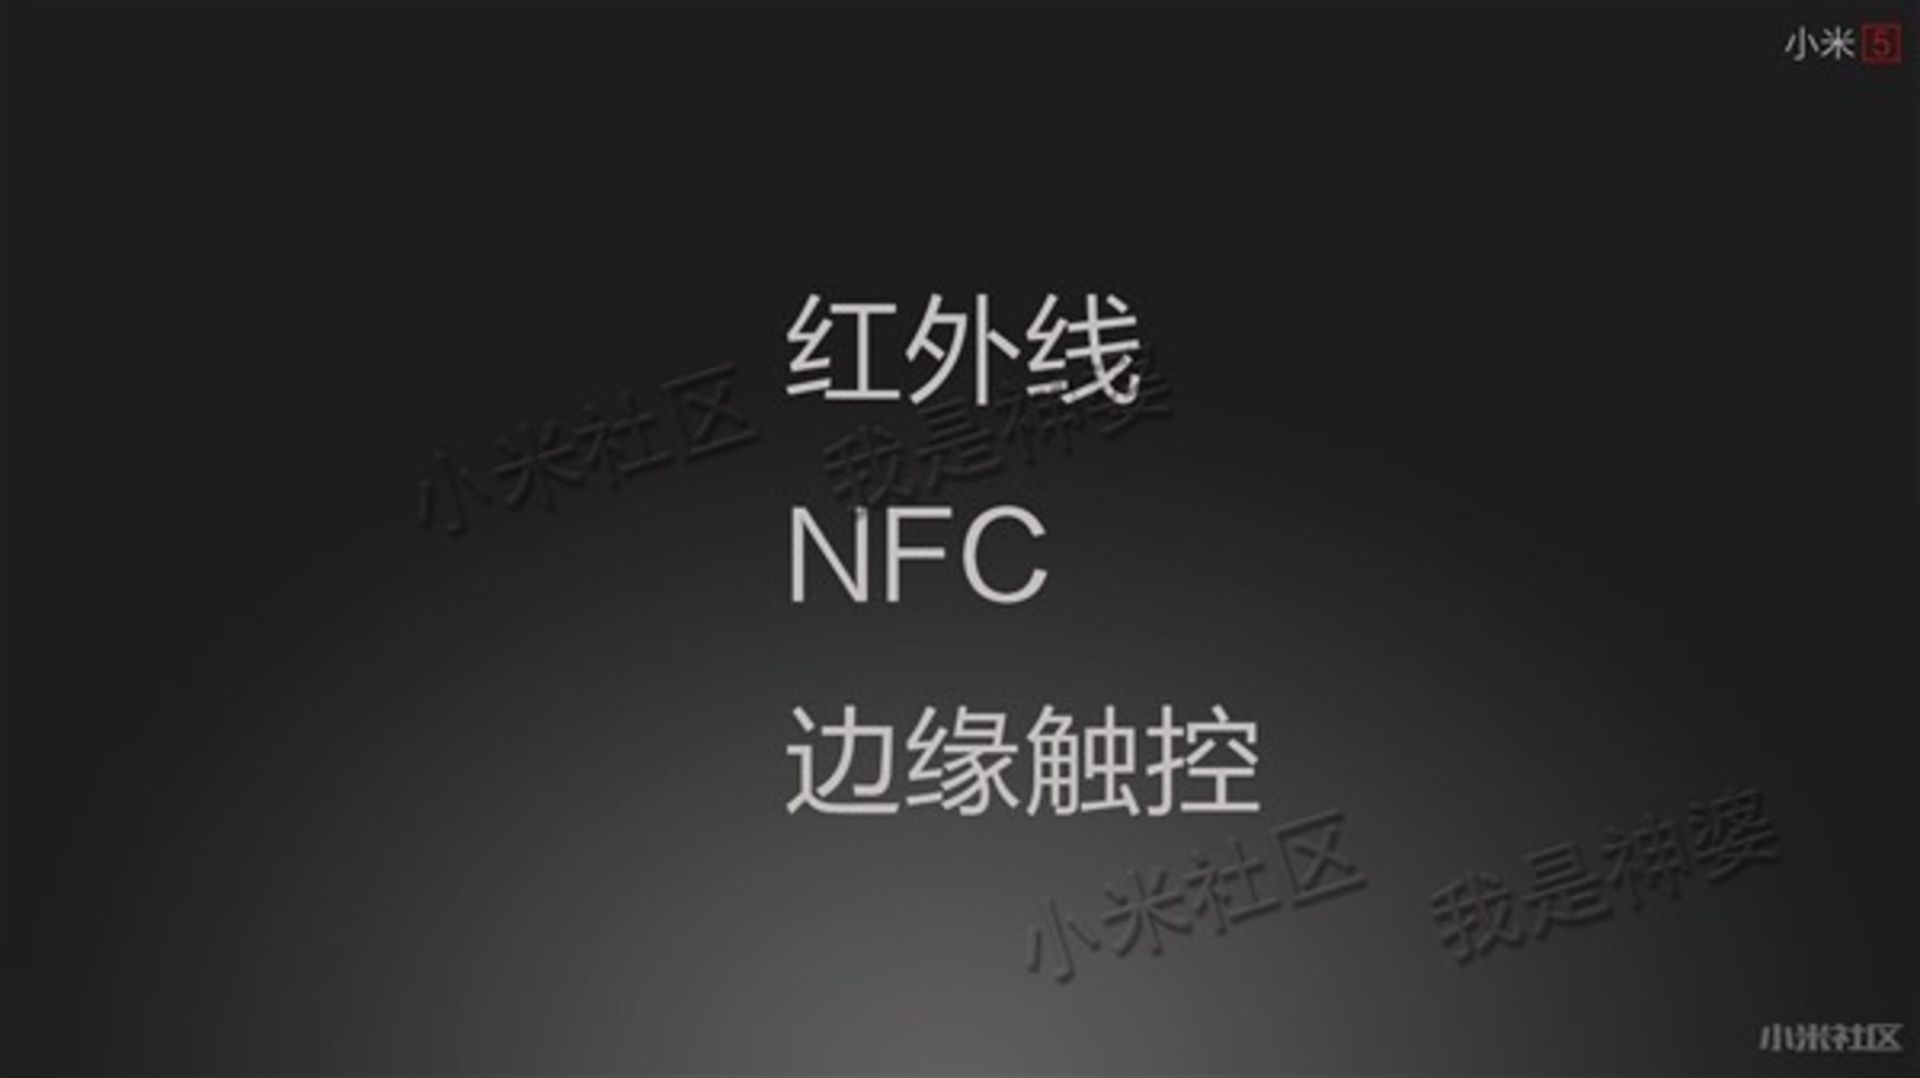 پشتیبانی از NFC